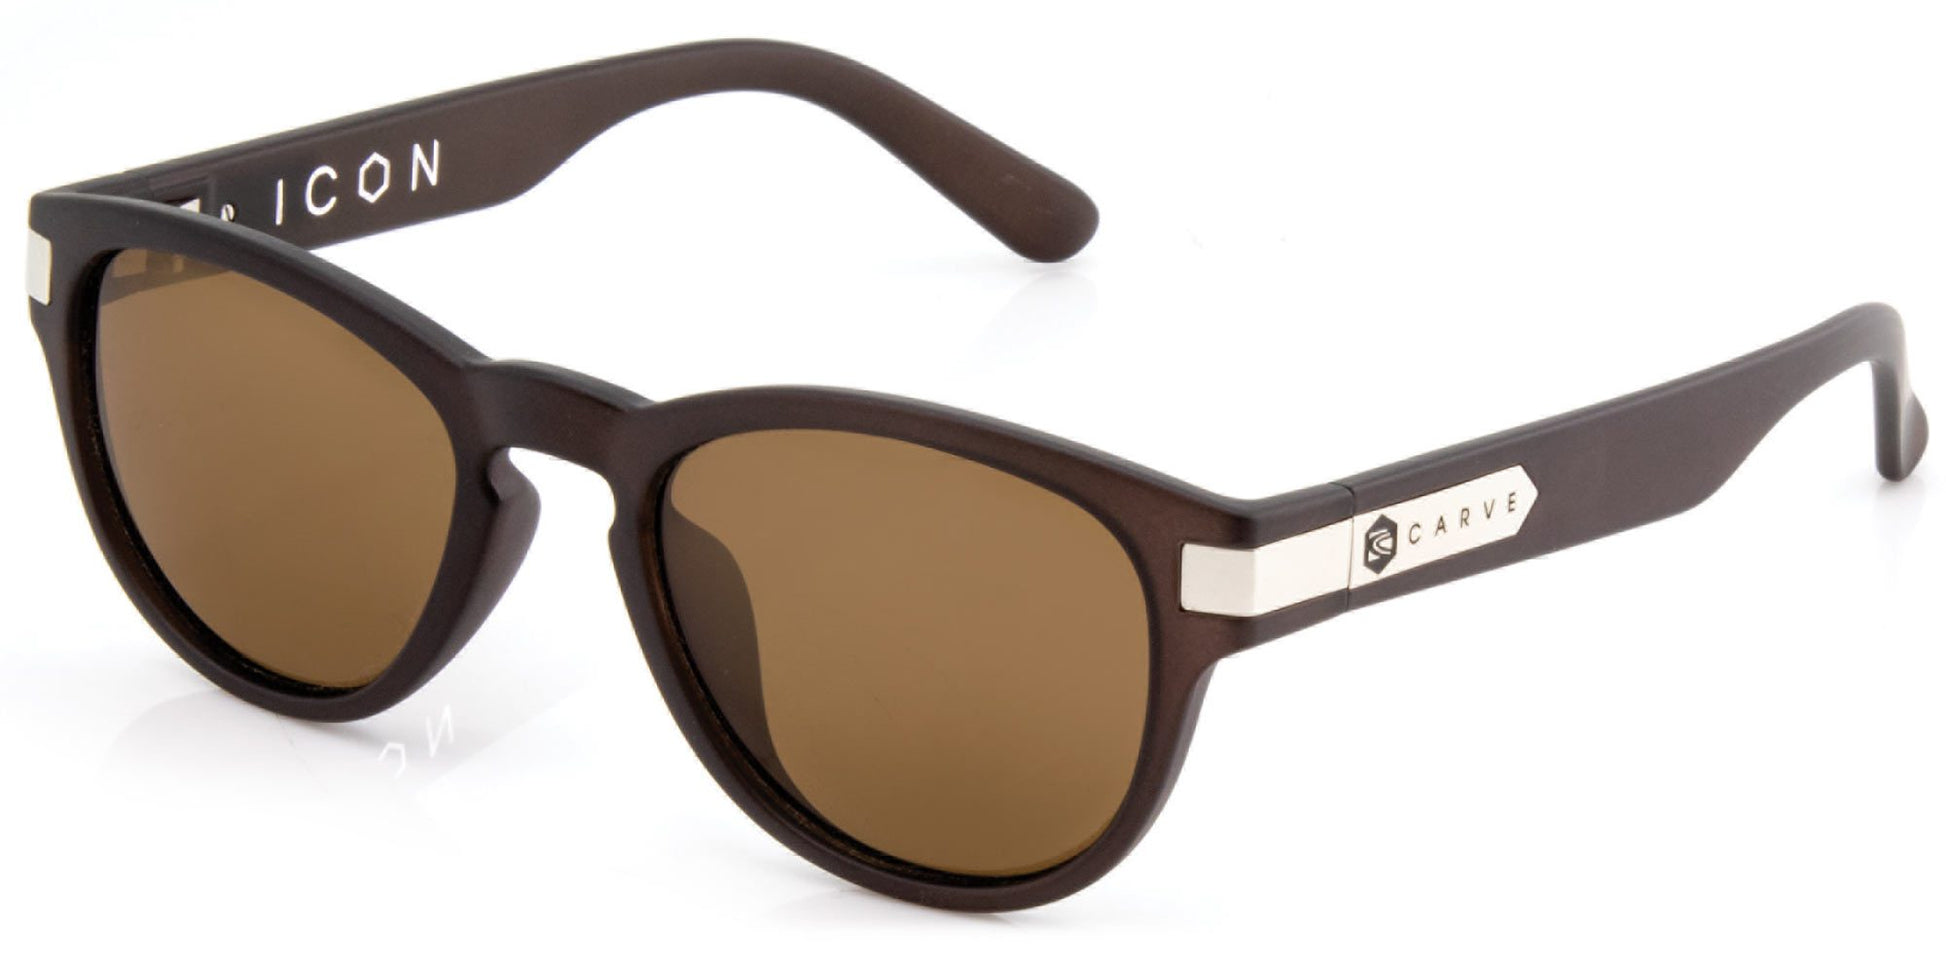 Carve Icon Polarized Sunglasses - Matte Brown Trans- Black Blue Tort Sunglasses Matte Brown